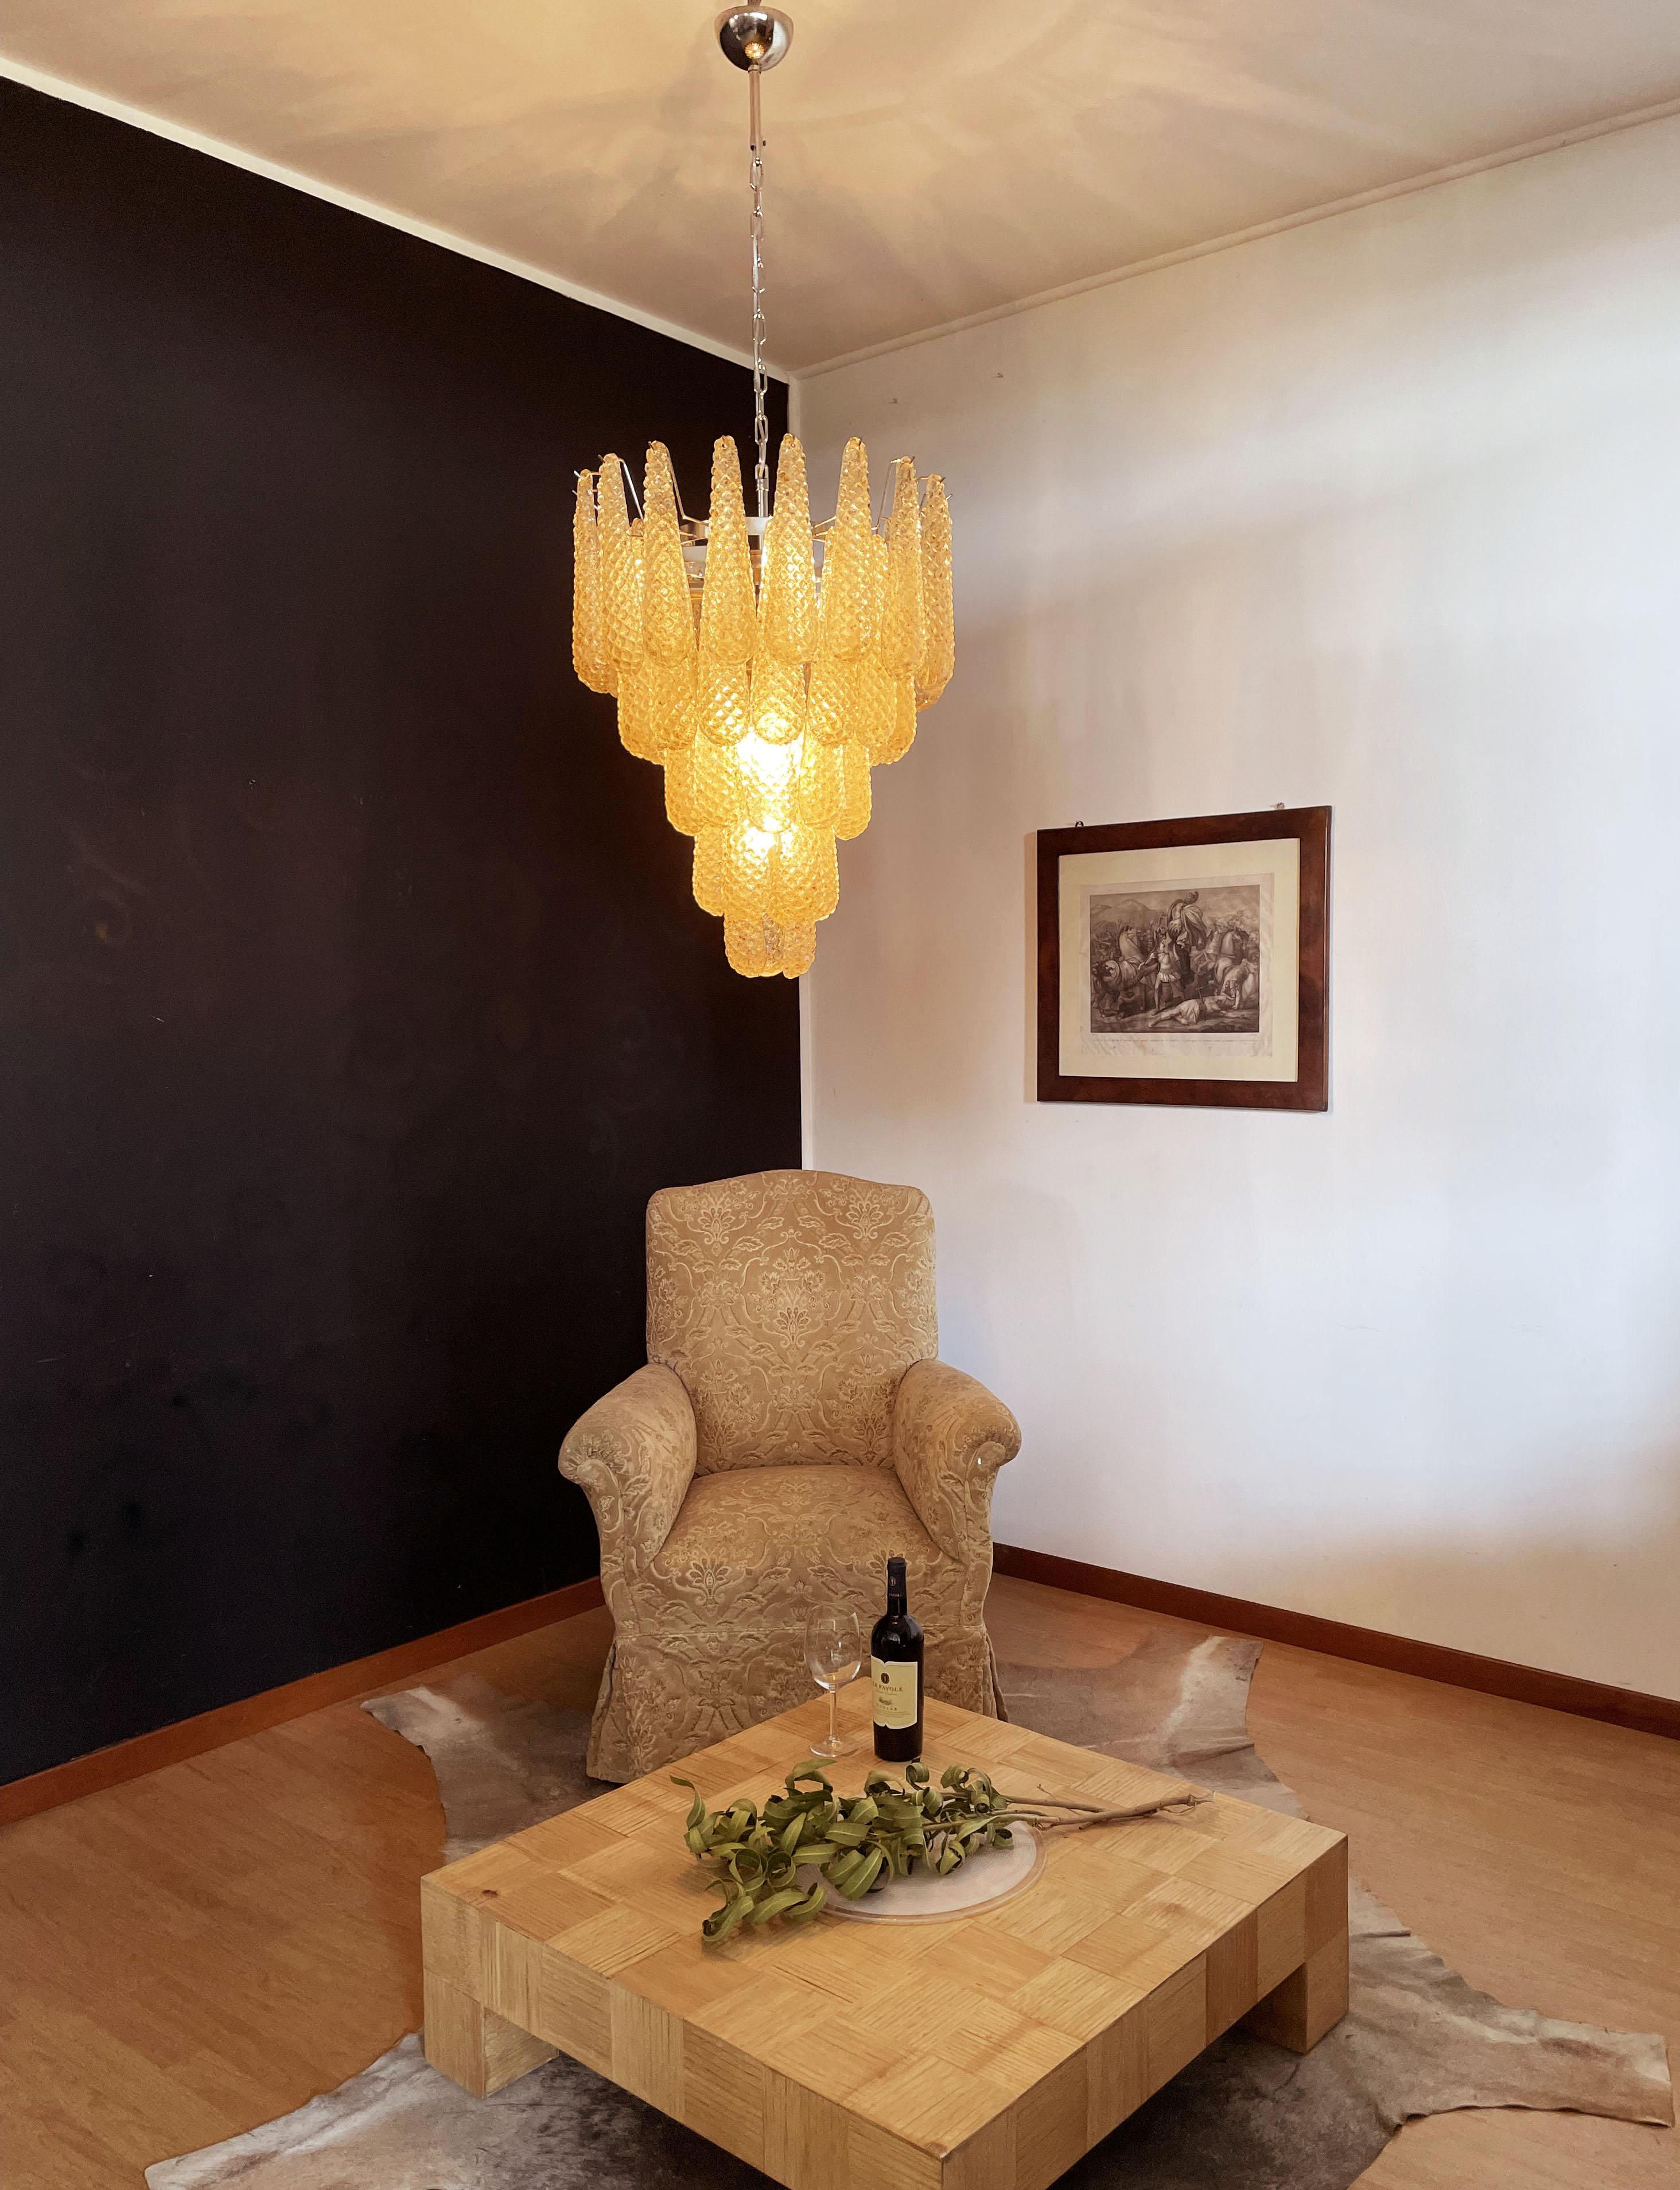 Galvanized Italian Vintage Murano Chandelier, 52 Amber Glass Petals Drop